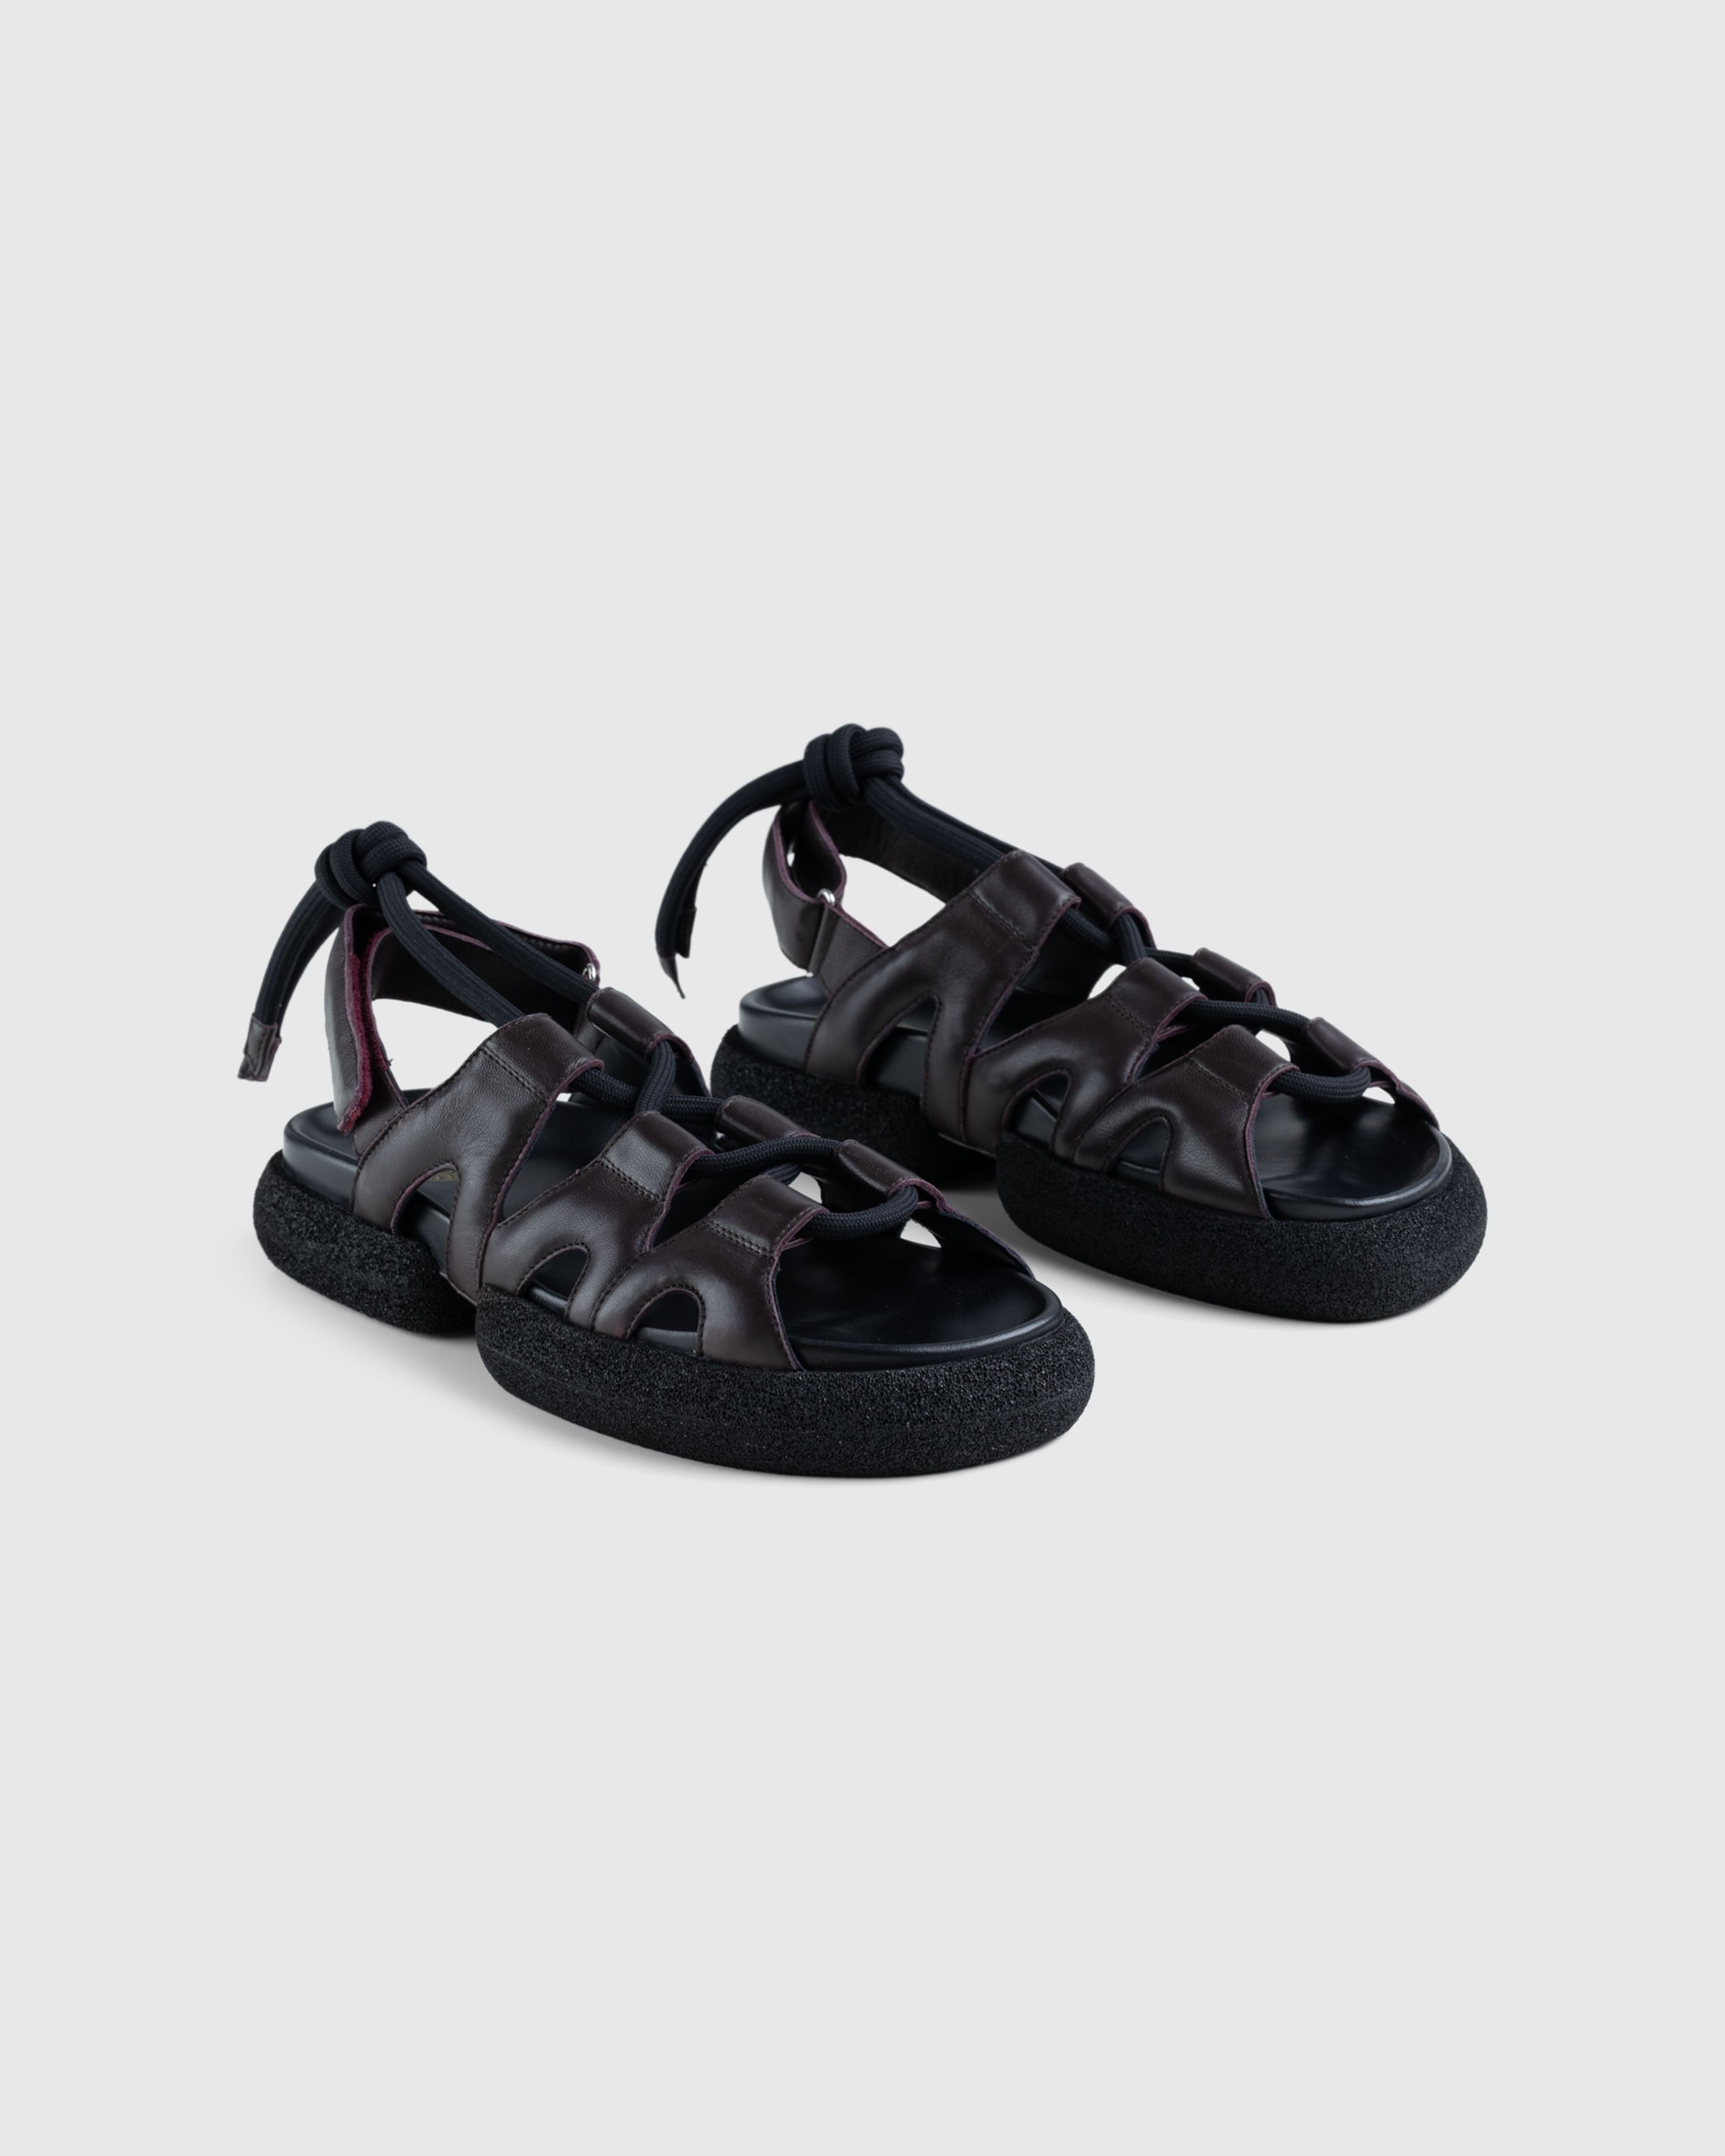 Dries van Noten - Heavy Platform Sandals Bordeaux - Footwear - Red - Image 3